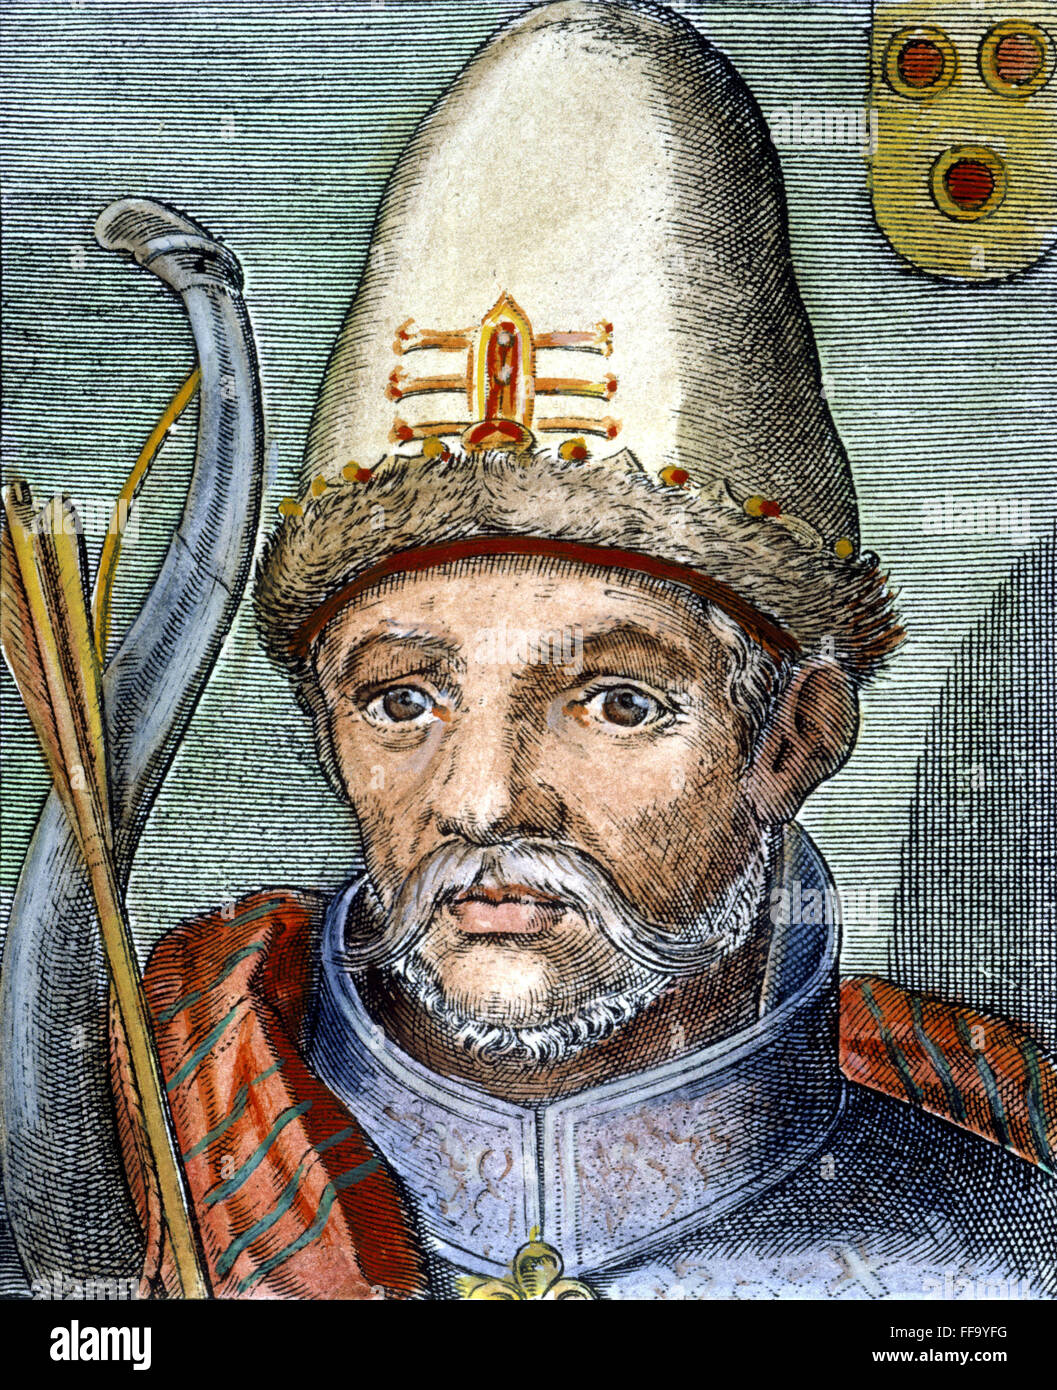 TIMUR (1336?-1405). /nTurkic Eroberer. Italienische Linie Gravur, 1600. Stockfoto